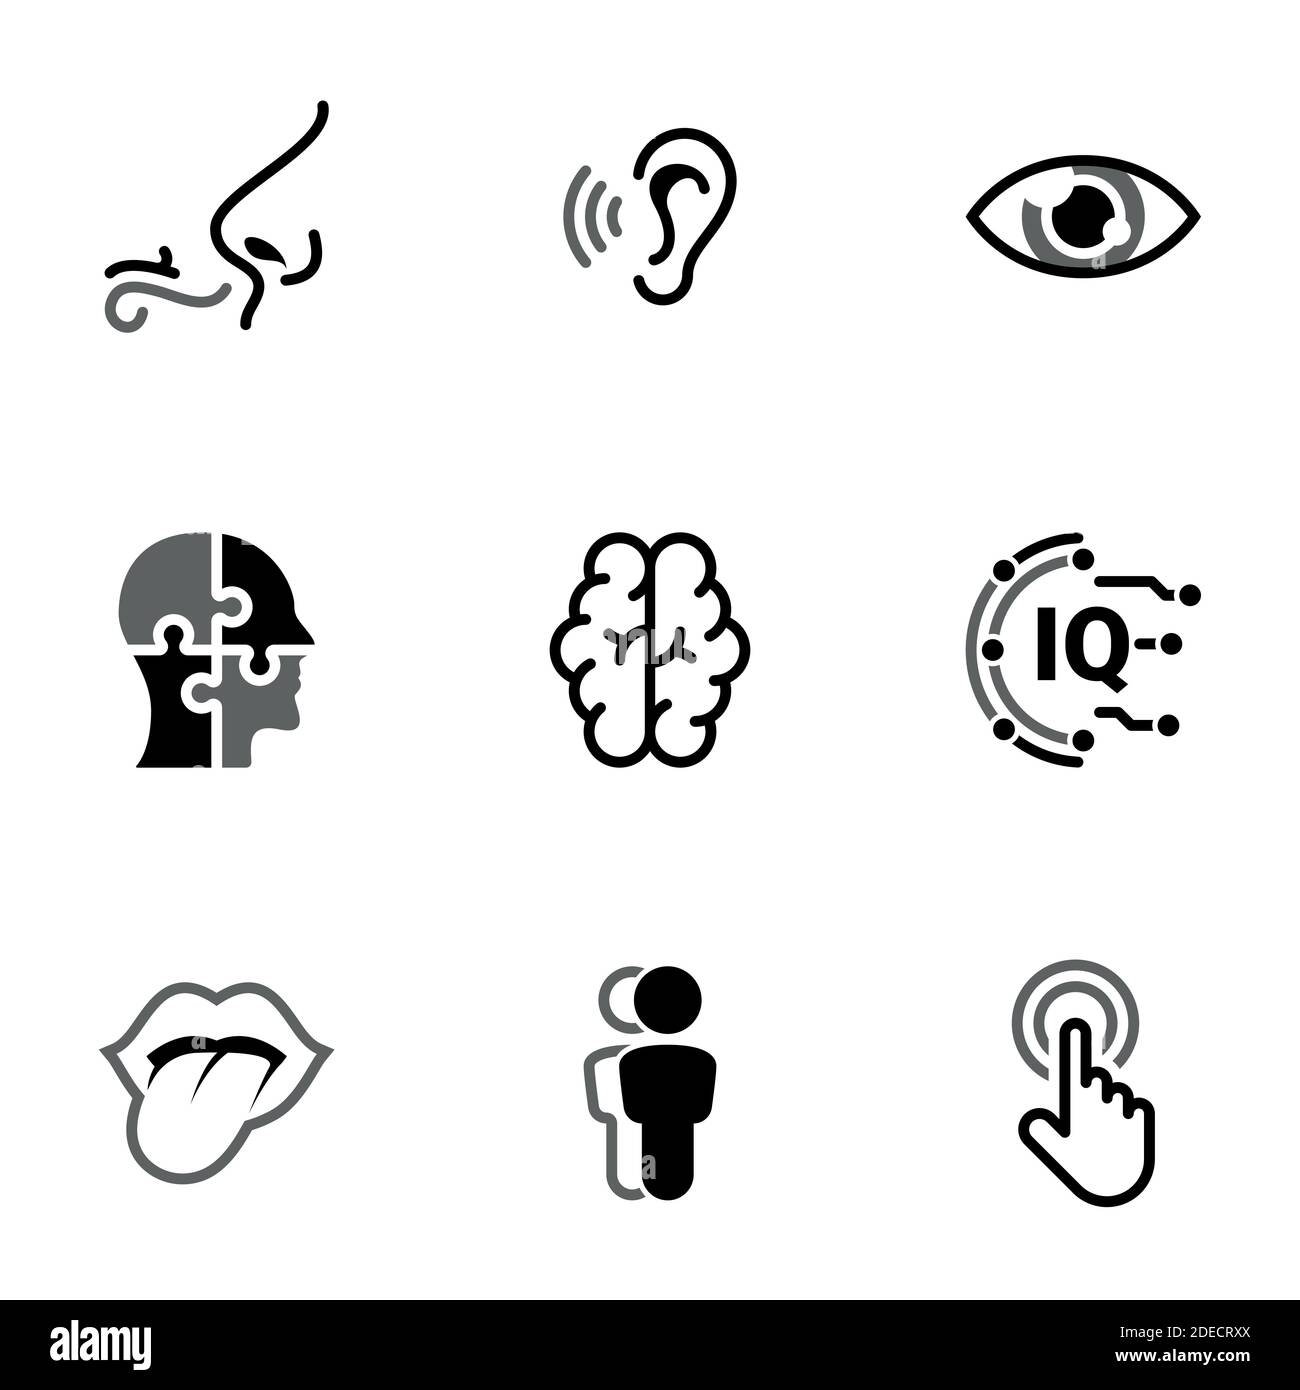 Ensemble d'icônes simples sur un thème organes de sens, homme, esprit, traitement, perception, intellect , vecteur, ensemble. Icônes noires isolées sur fond blanc Illustration de Vecteur